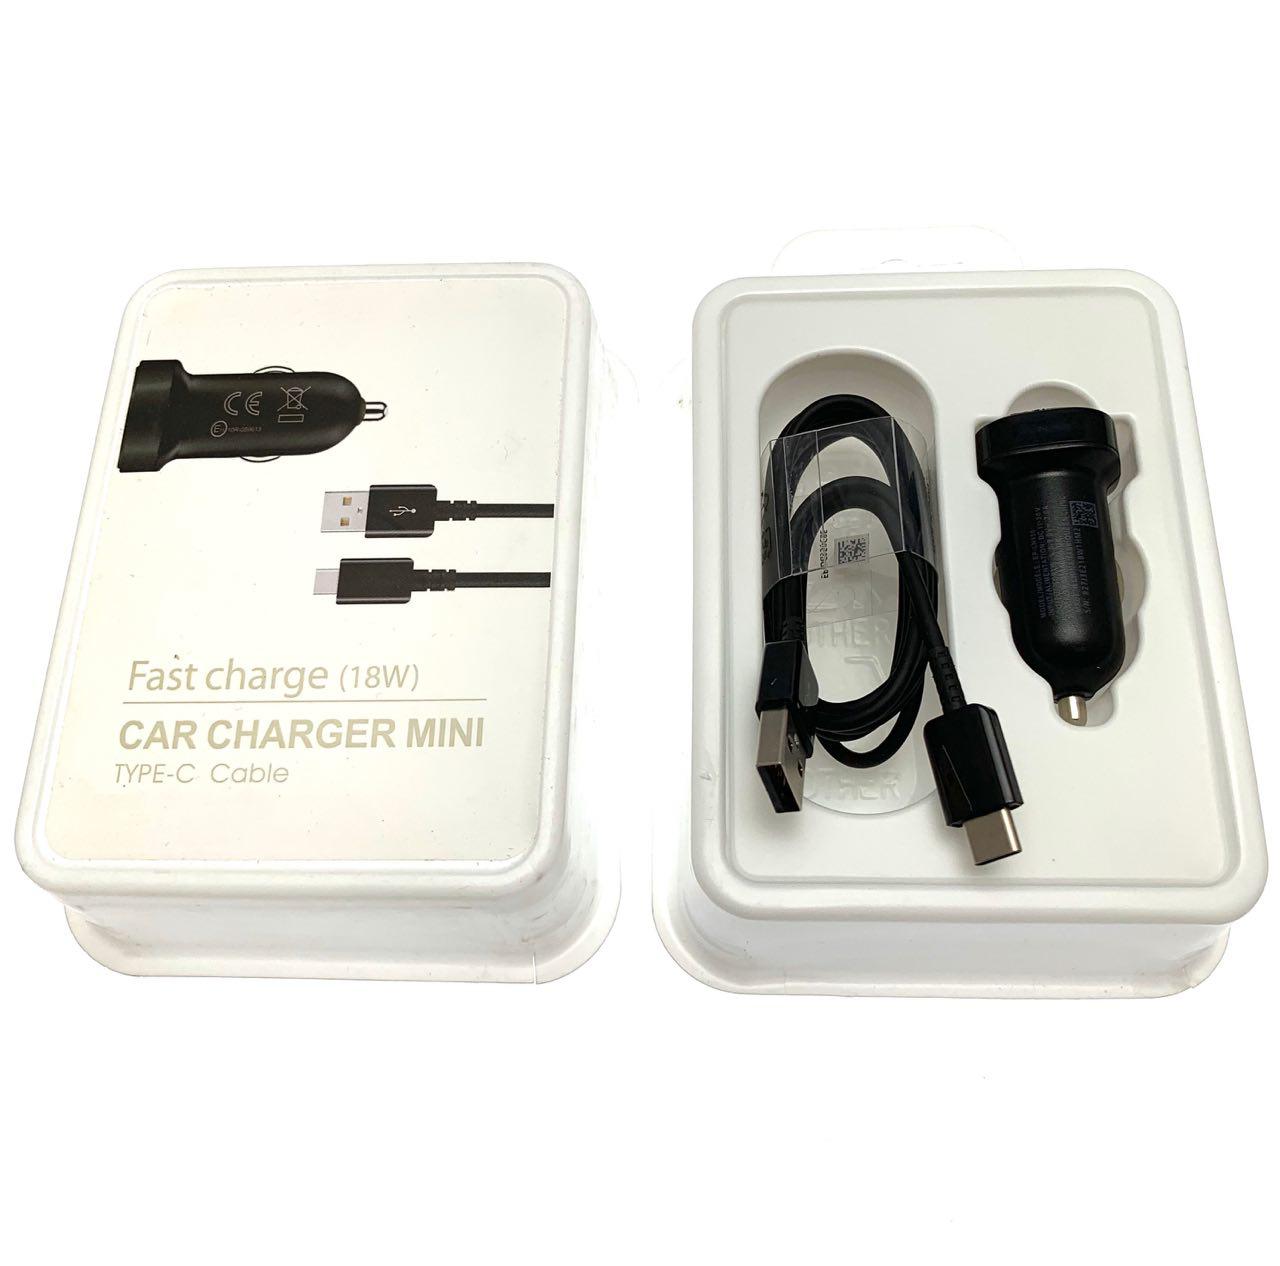 АЗУ(Автомобильное зарядное устройство) S7 EP-LN930 c кабелем USB Type C, 2A, длина 1 метр, цвет черный